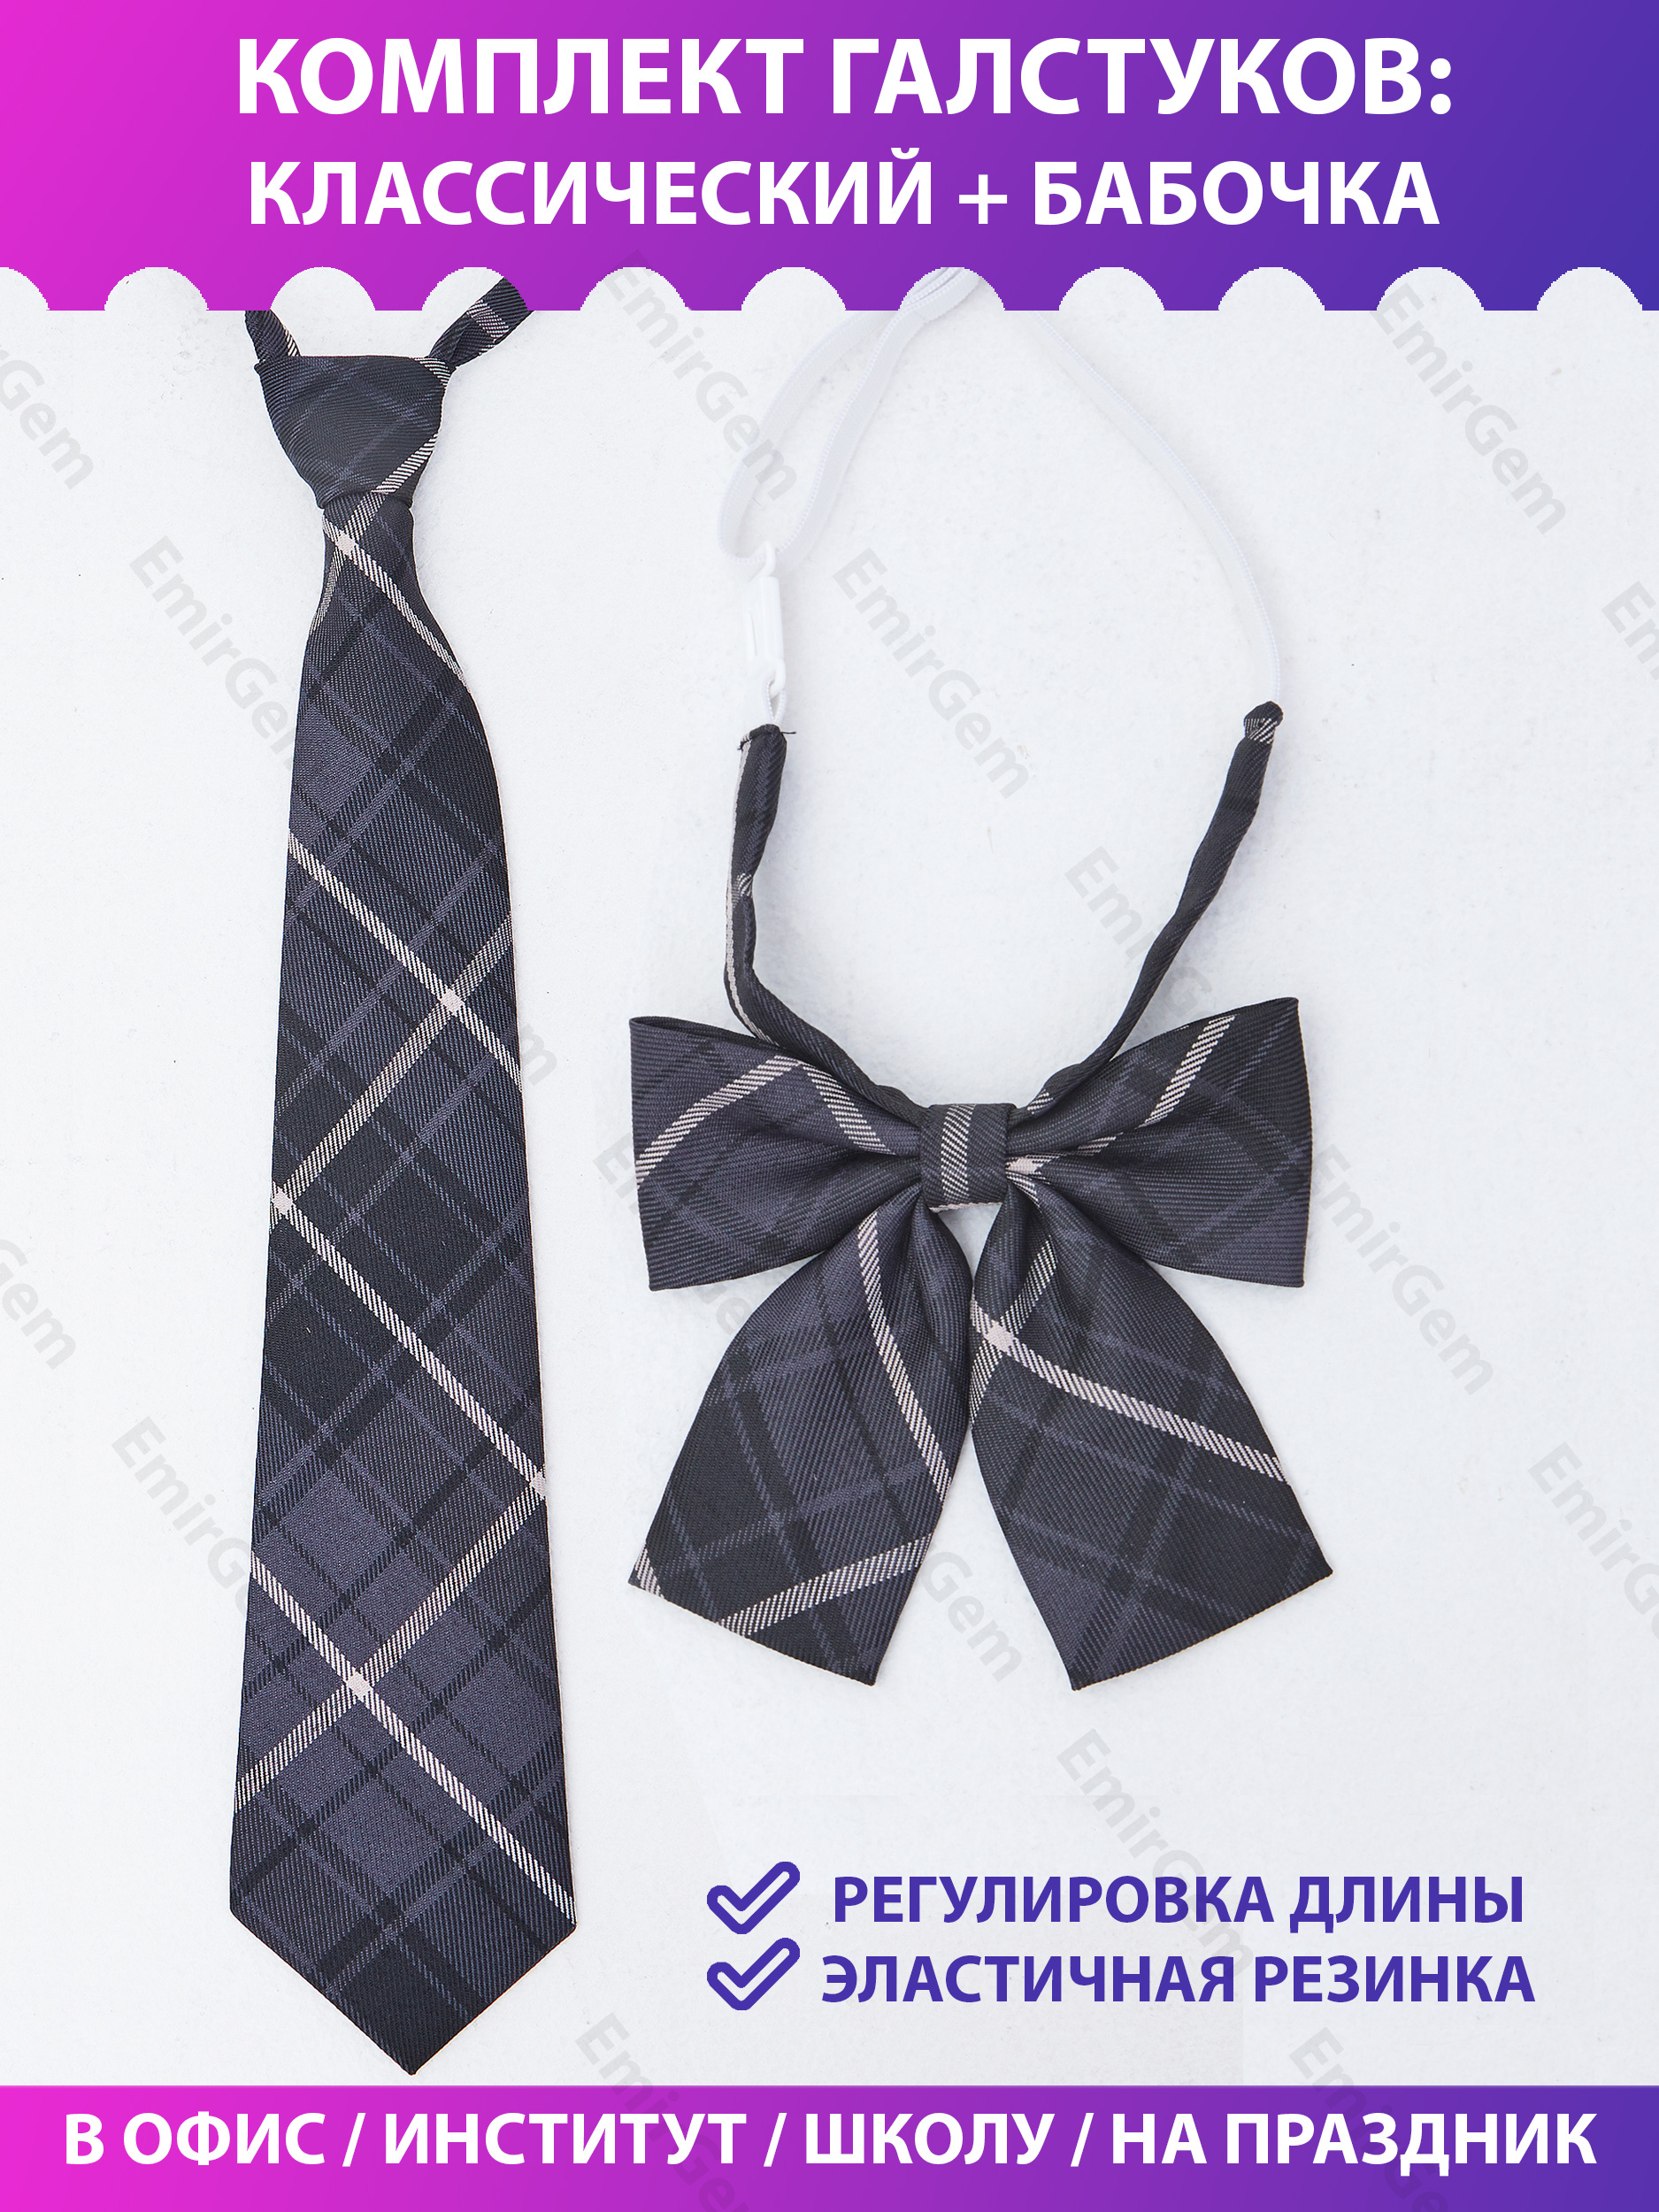 Выкройка галстука: как сшить галстук своими руками